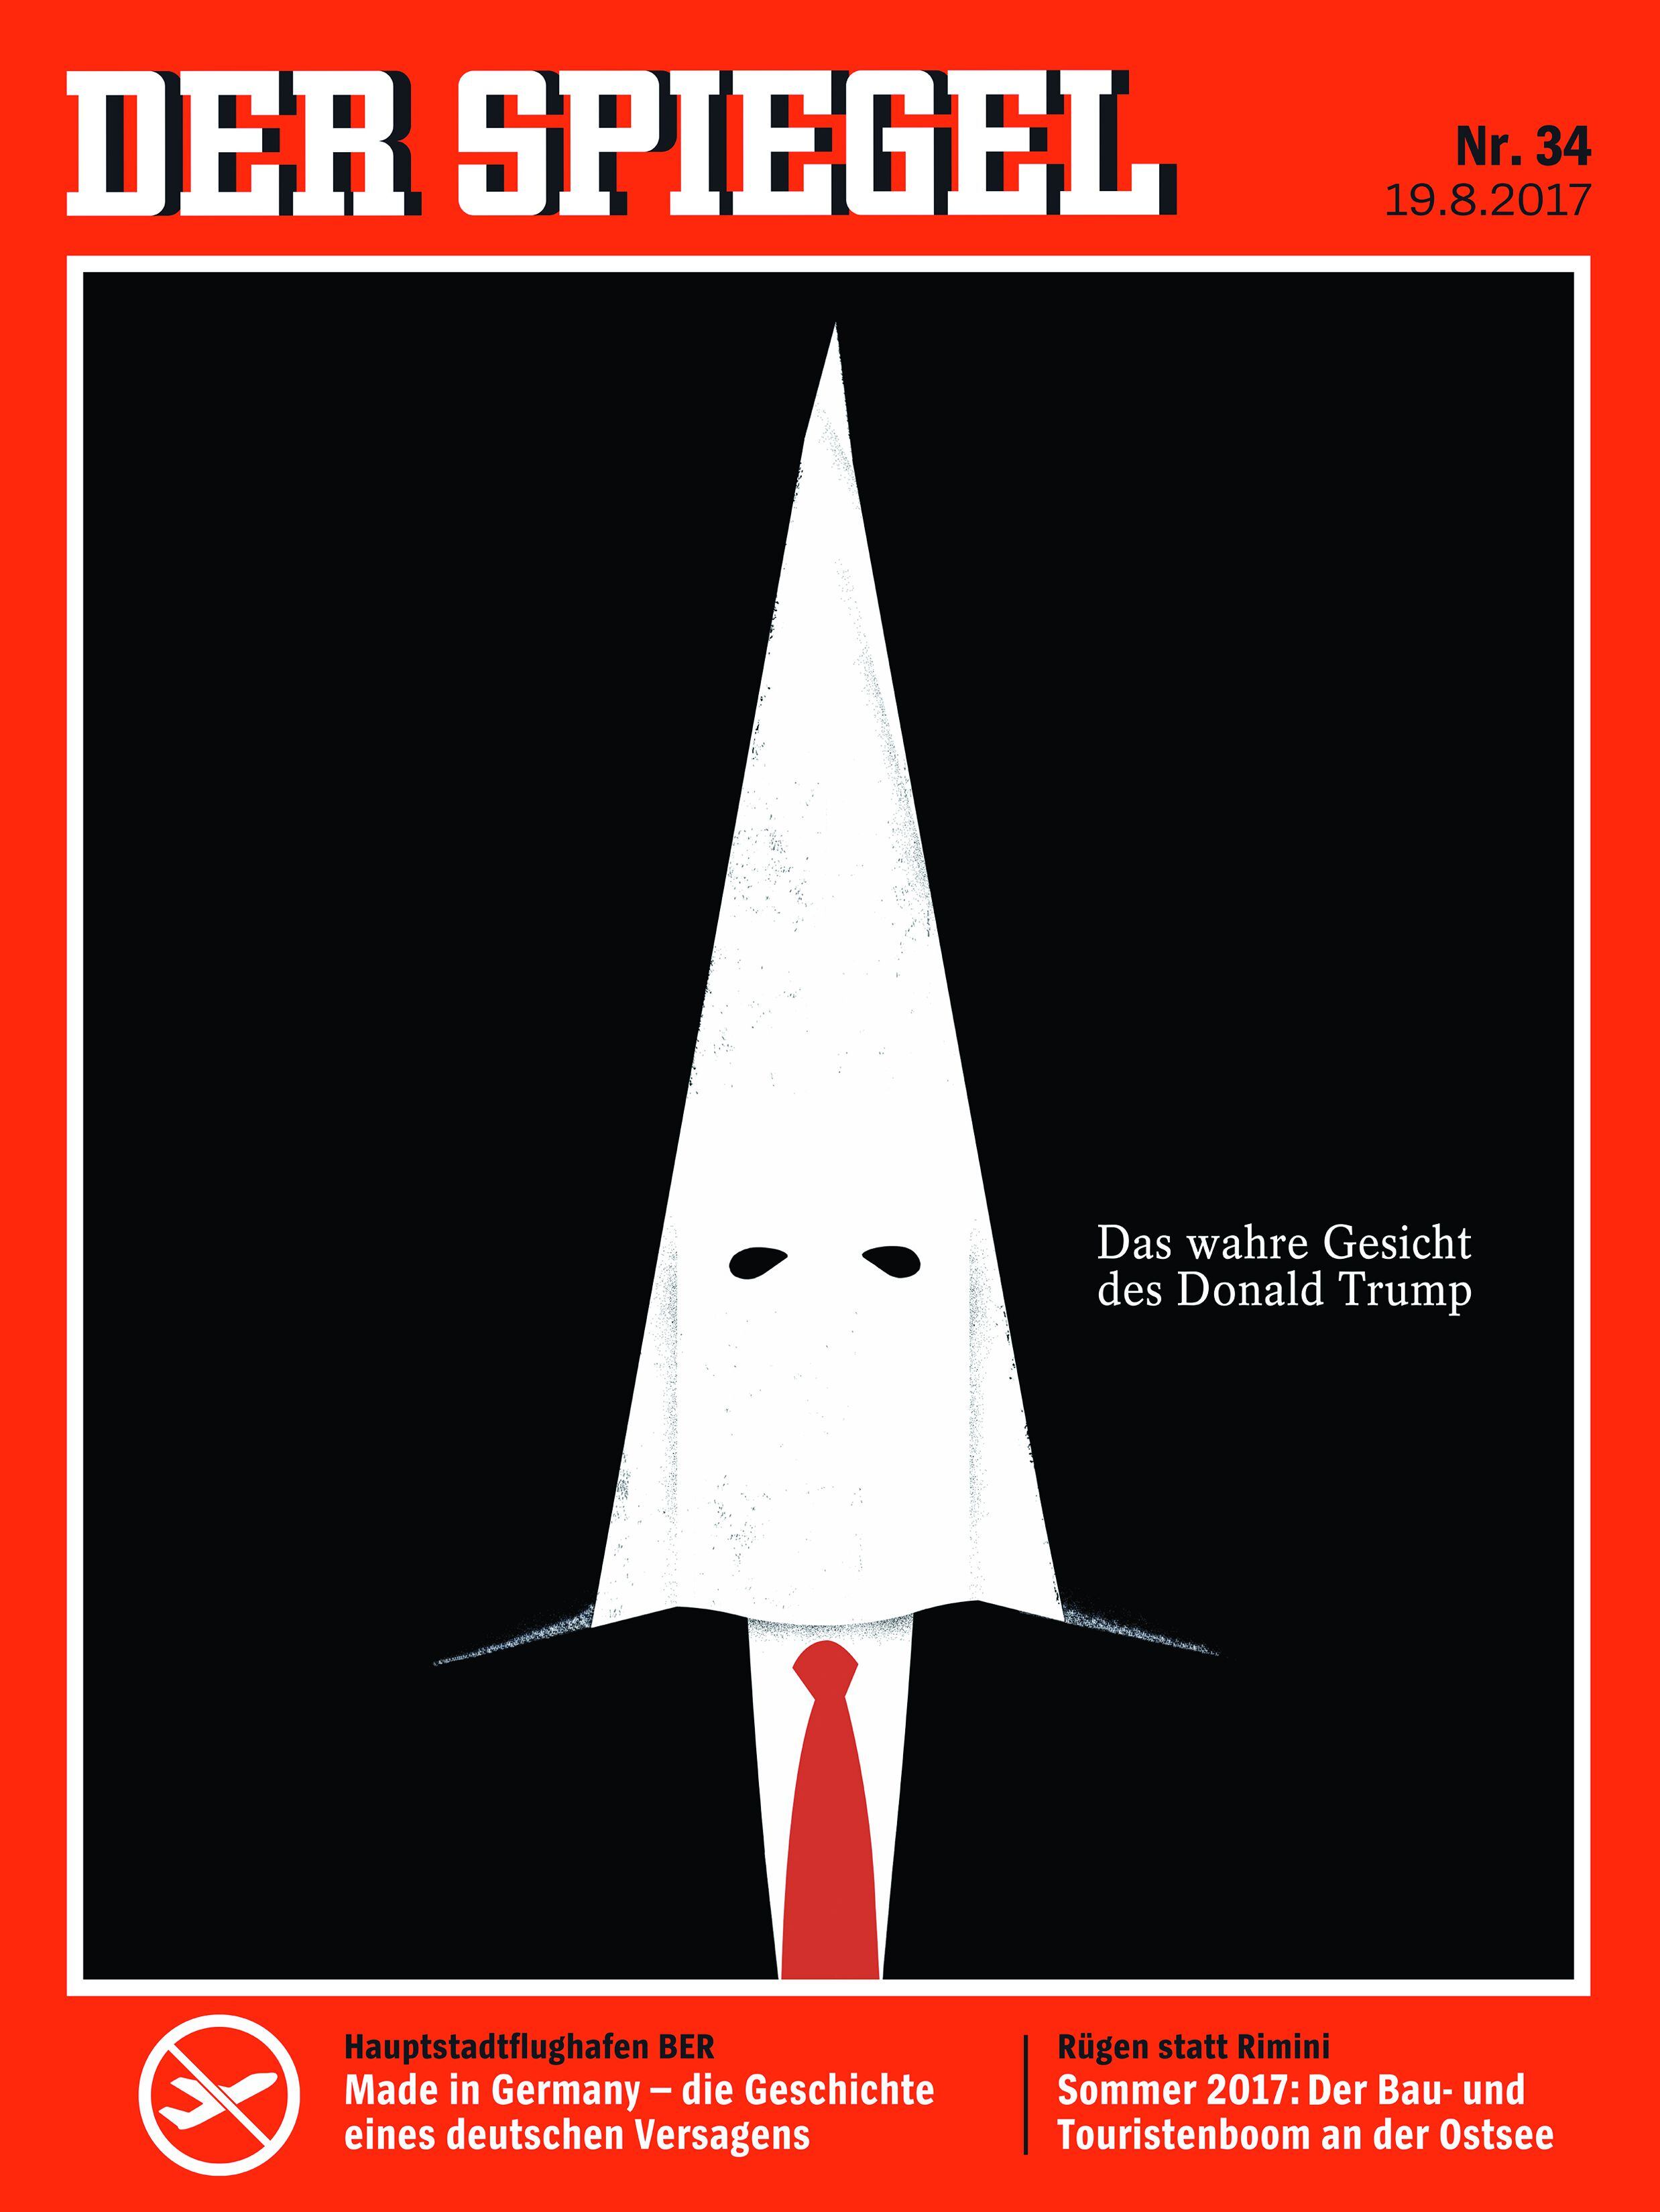 La censura le ha llegado de los lugares más insospechados, como en una exposición son sus ilustraciones en la que esta portada de 'Der Spiegel' (